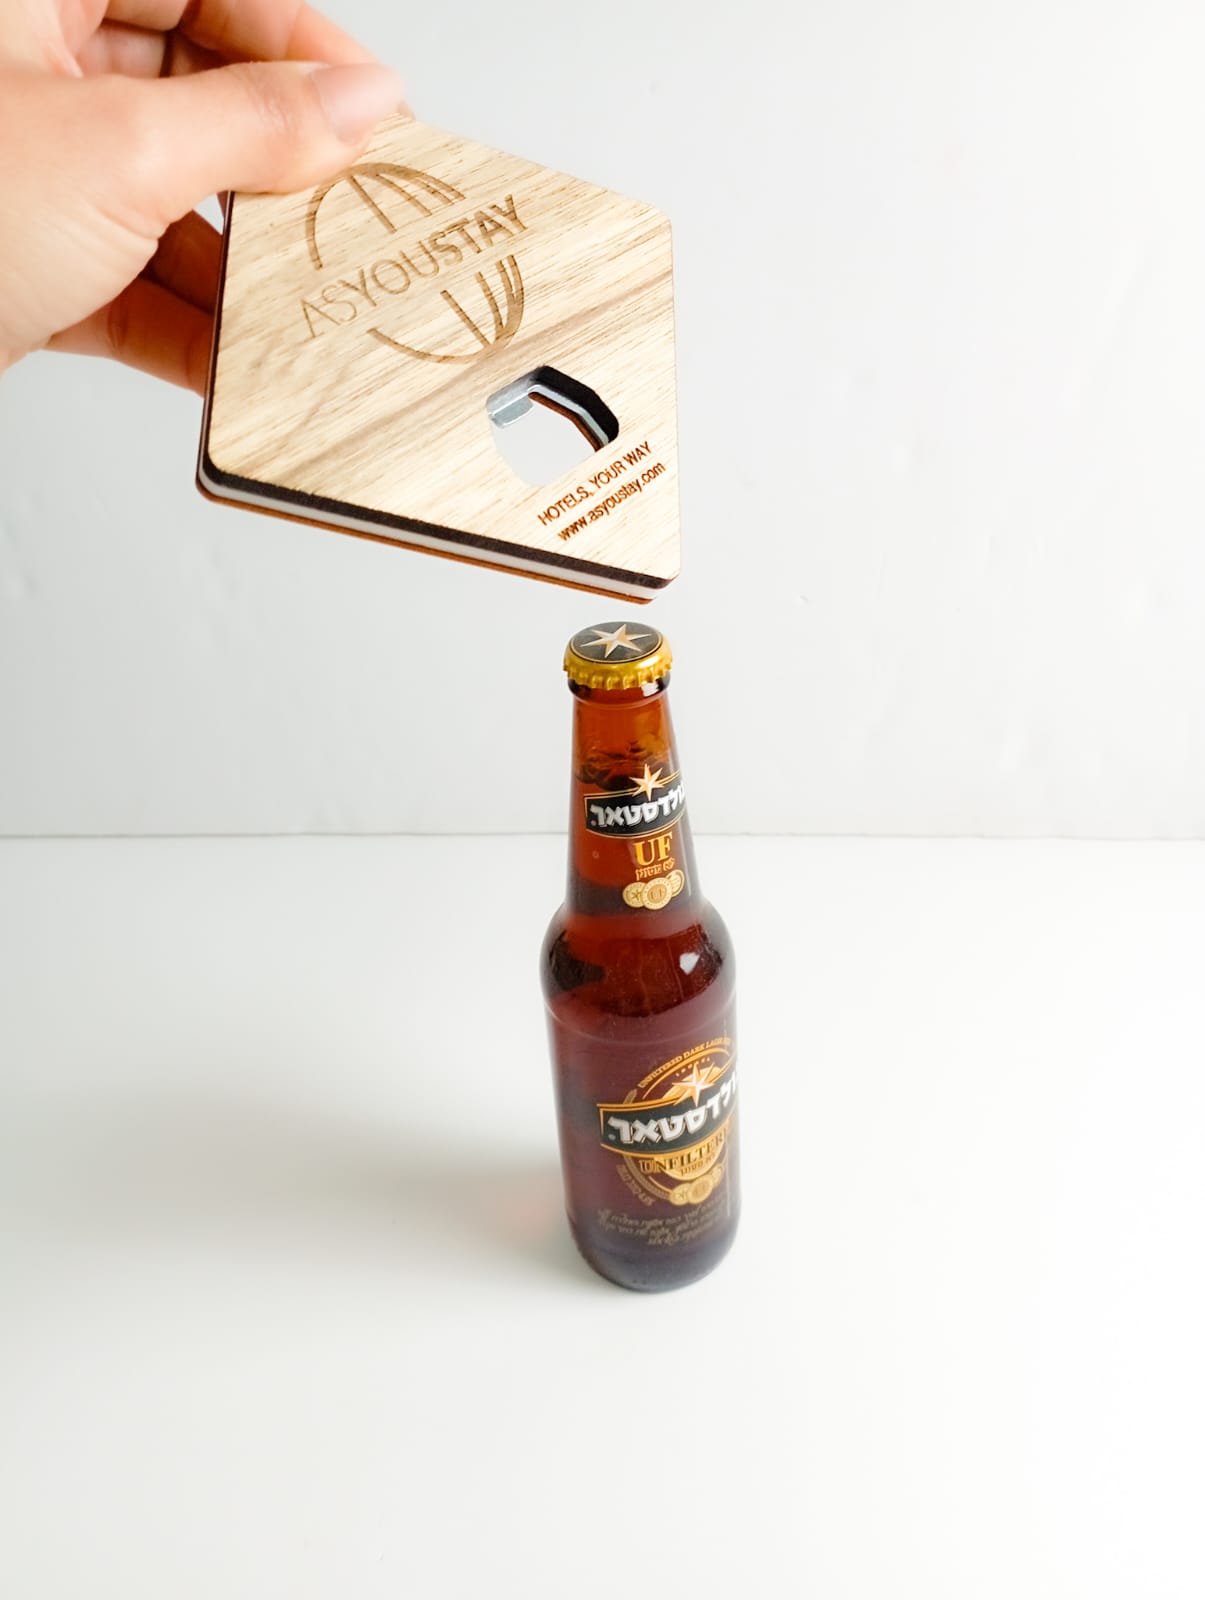 תחתית פותחן - פותחן בקבוקי בירה המשמש גם כתחתית לבקבוק/כוס.
גודל: 9x9 ס